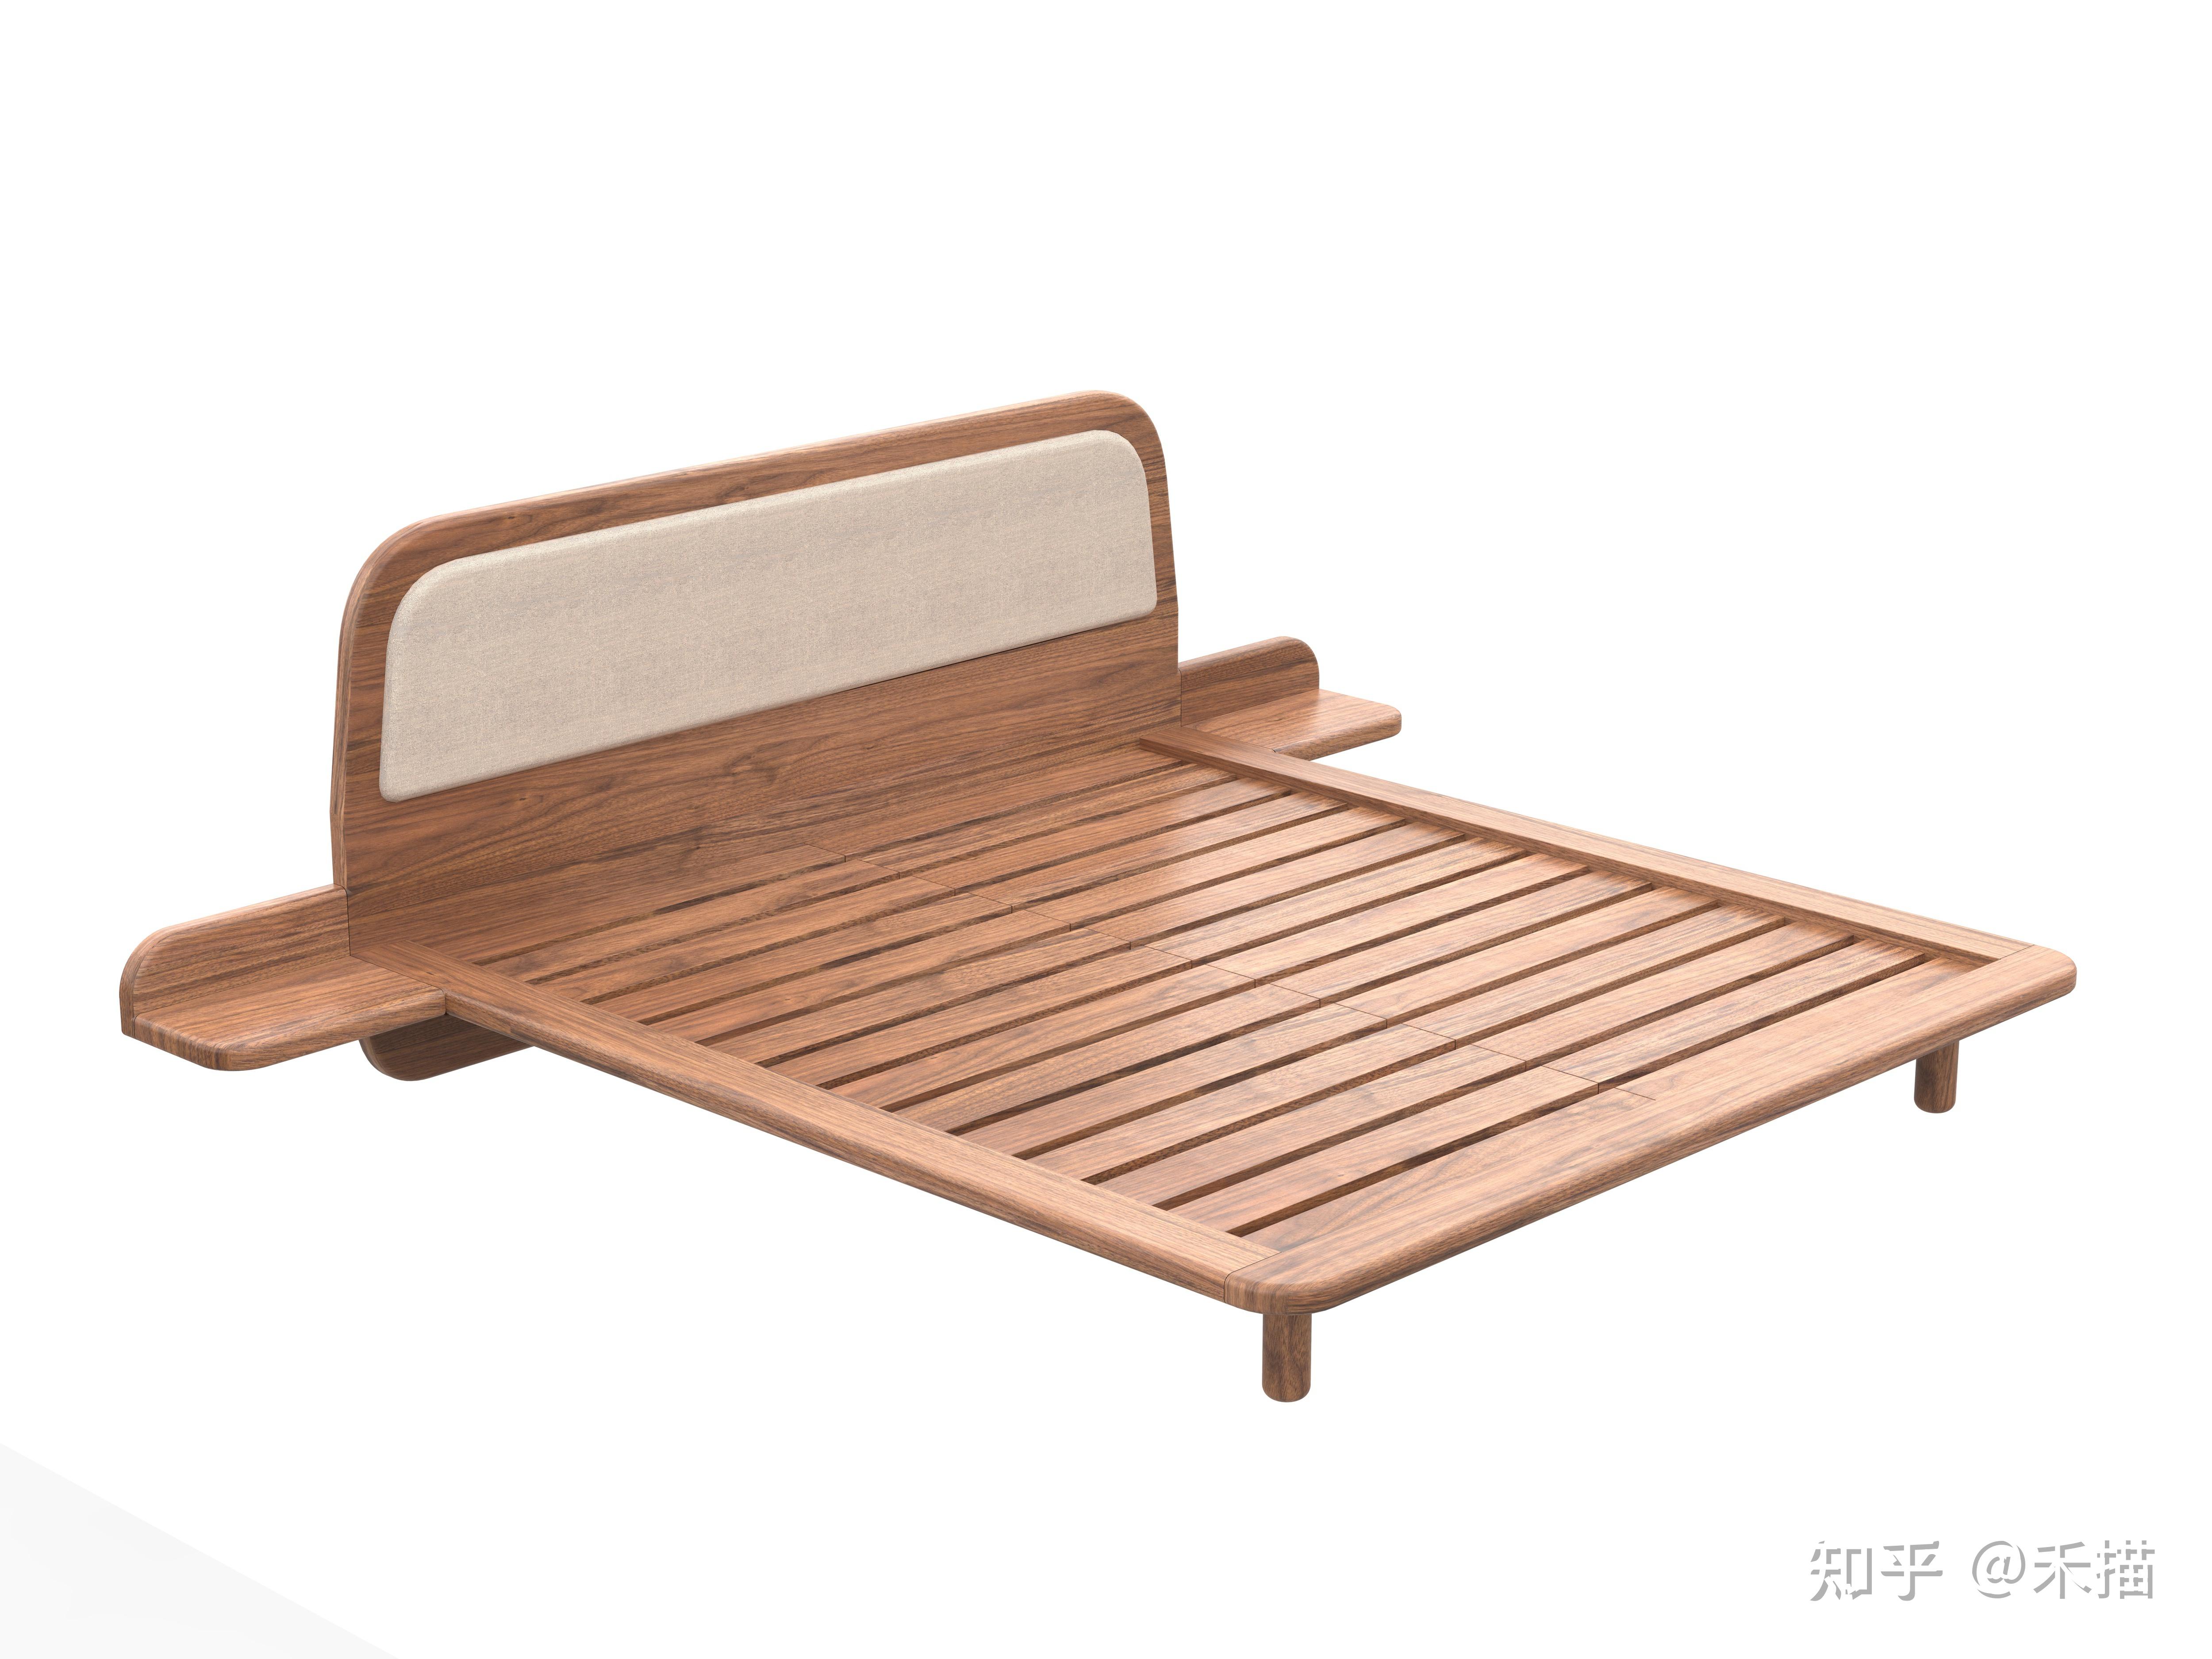 大自然 实木床 016型号 榄仁木框架 梧桐木板床 现代简约风格 双人床